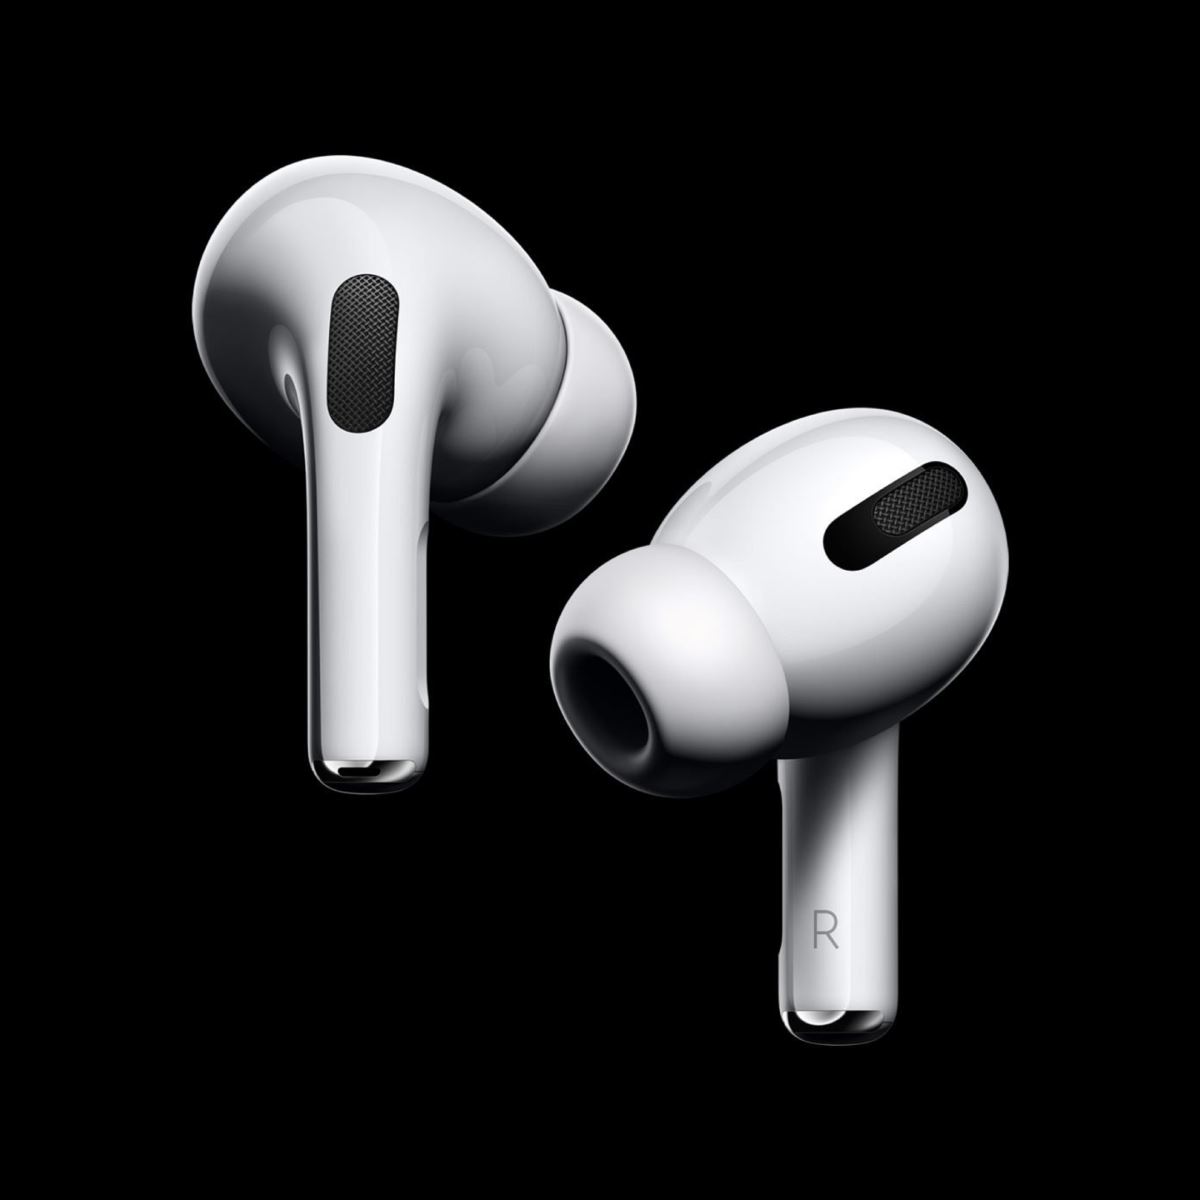 Apple chính thức ra mắt tai nghe AirPods Pro: thiết kế nhét tai, chống ồn chủ động, giá 249 USD